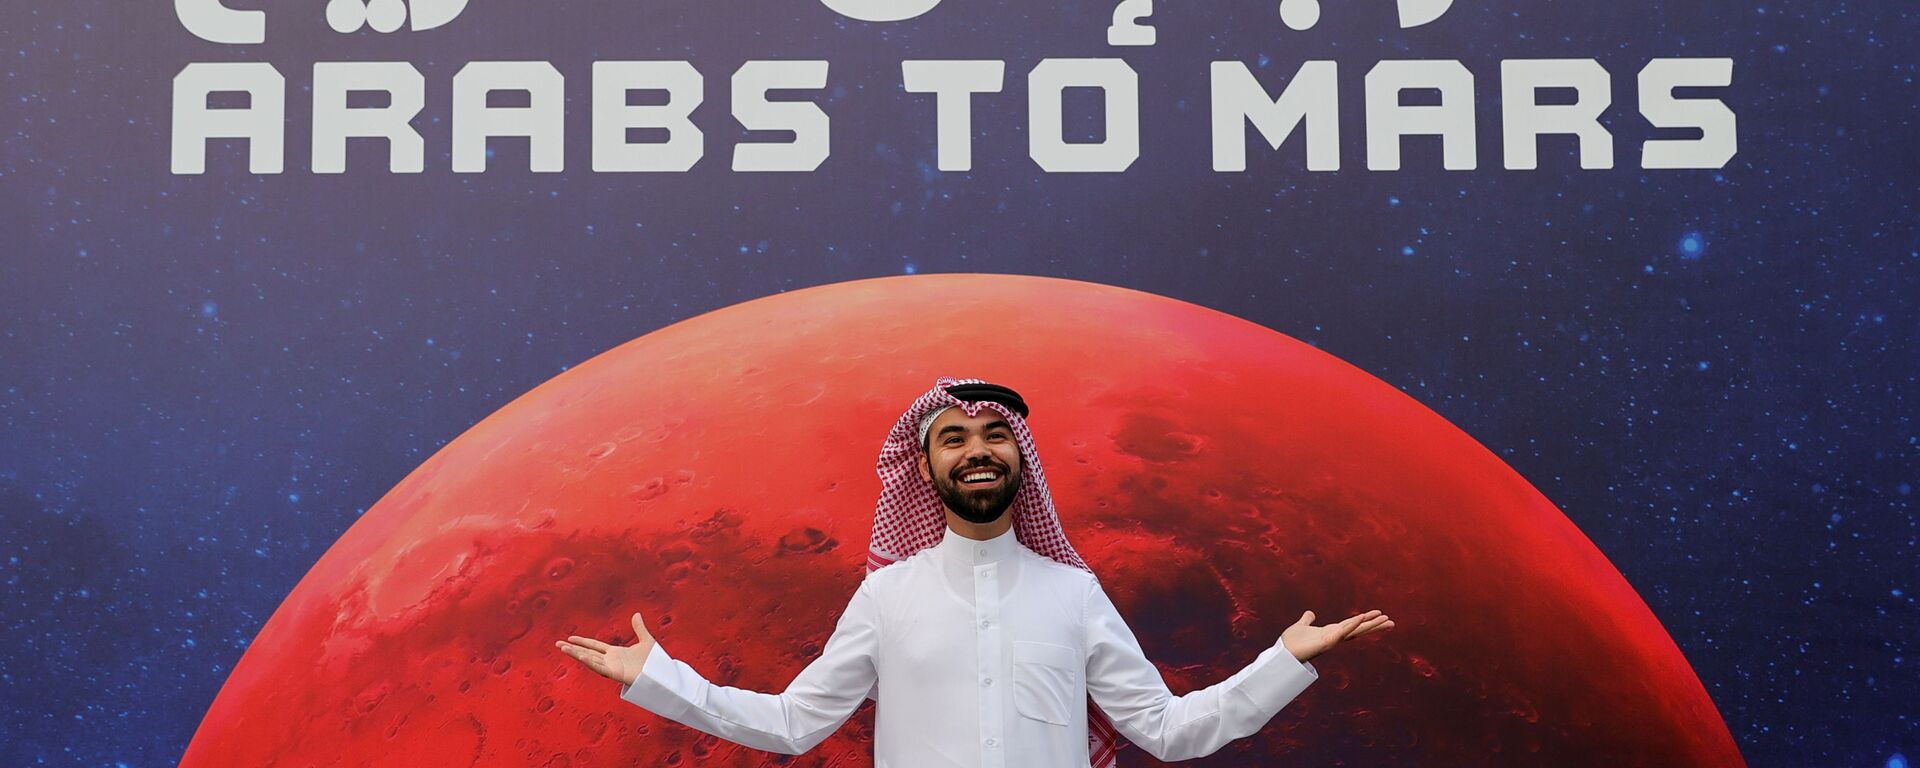 العرب إلى المريخ - لحظة إعلان وصول مسبار الأمل إلى كوكب المريخ، دبي، الإمارات العربية المتحدة 9 فبراير 2021 - سبوتنيك عربي, 1920, 12.04.2022